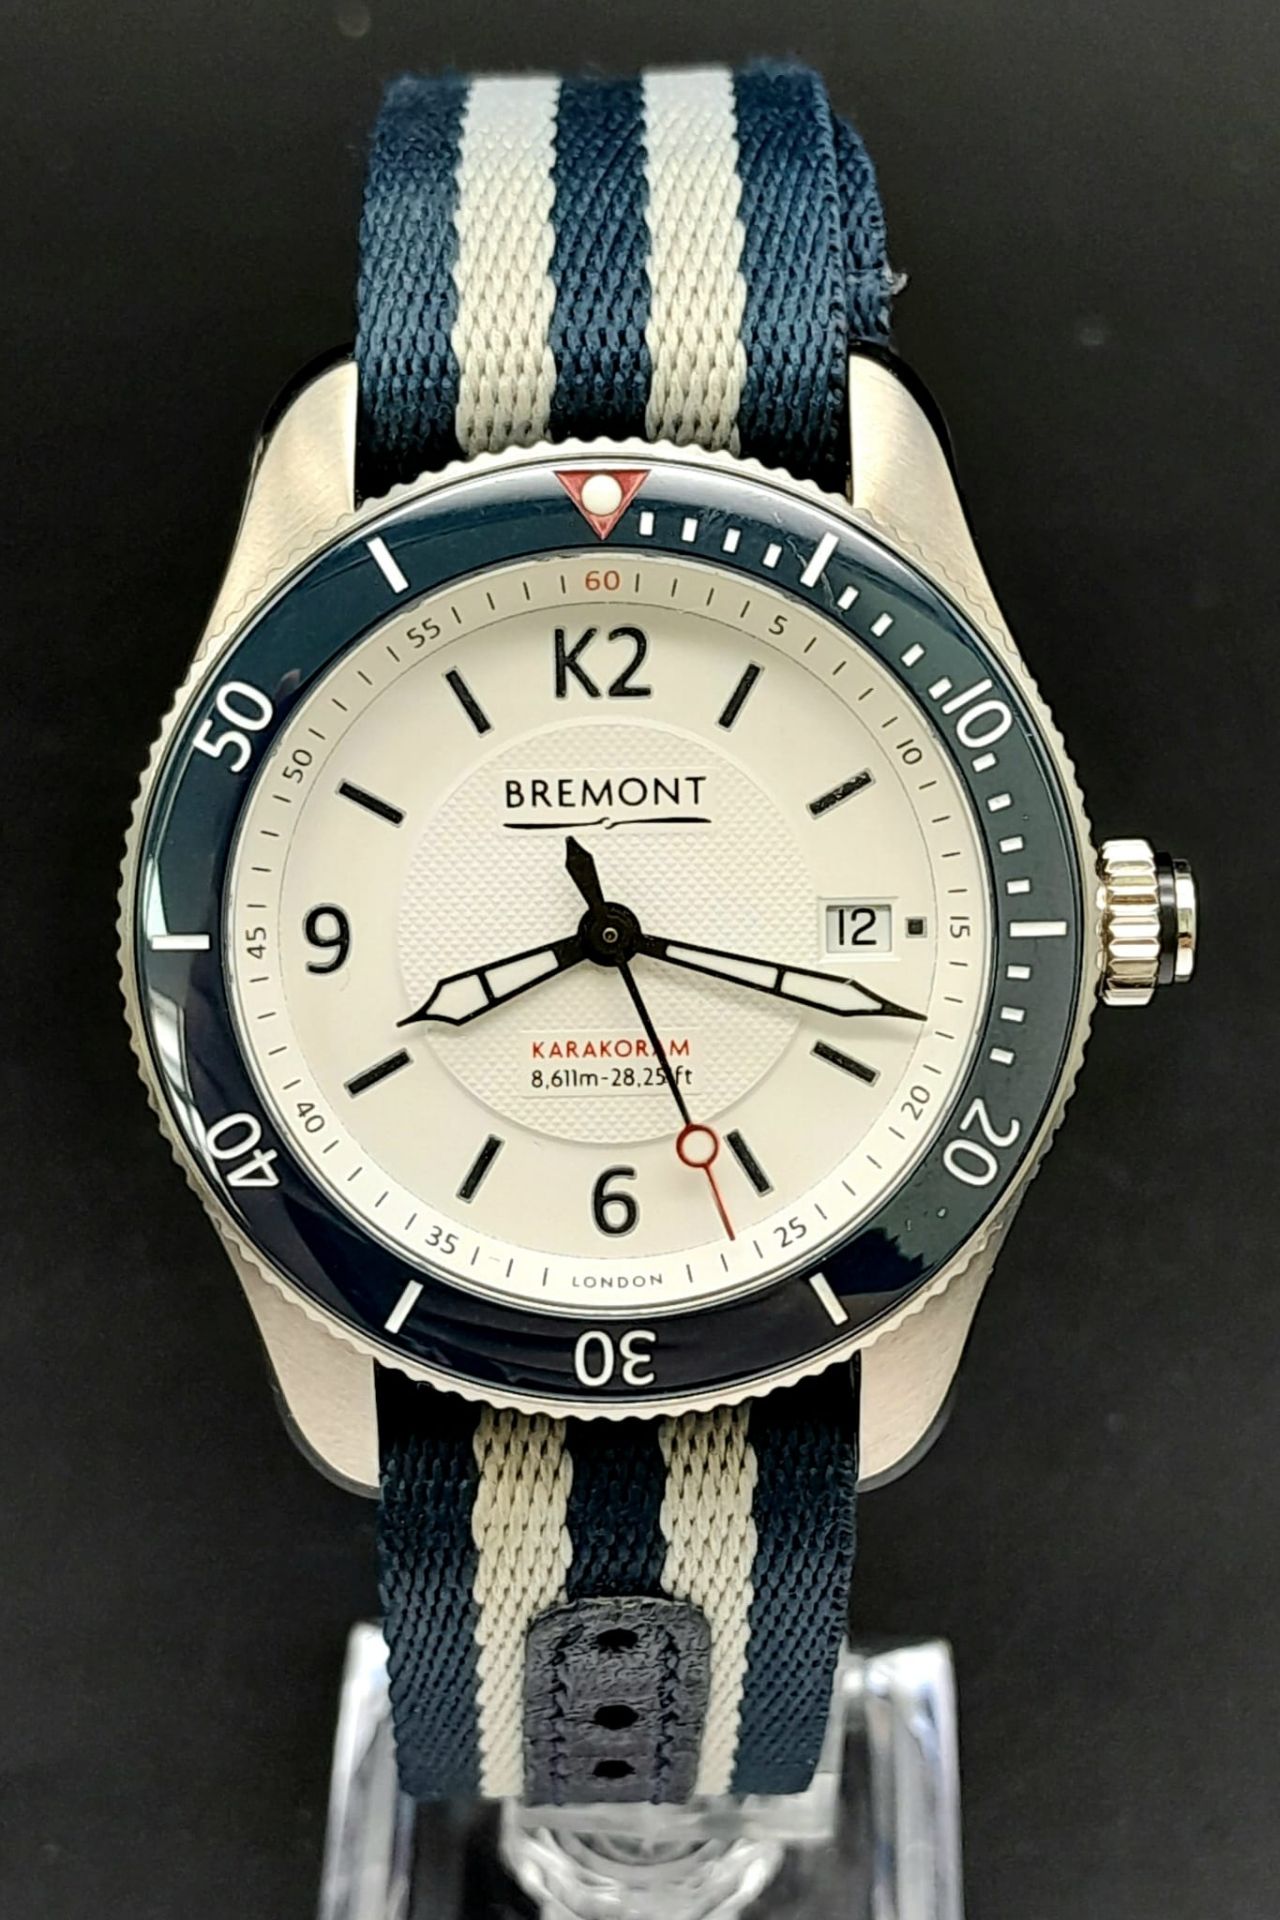 A Bremont Supermarine Karakoram Gents Watch. Striped textile Bremont strap. Stainless steel case -